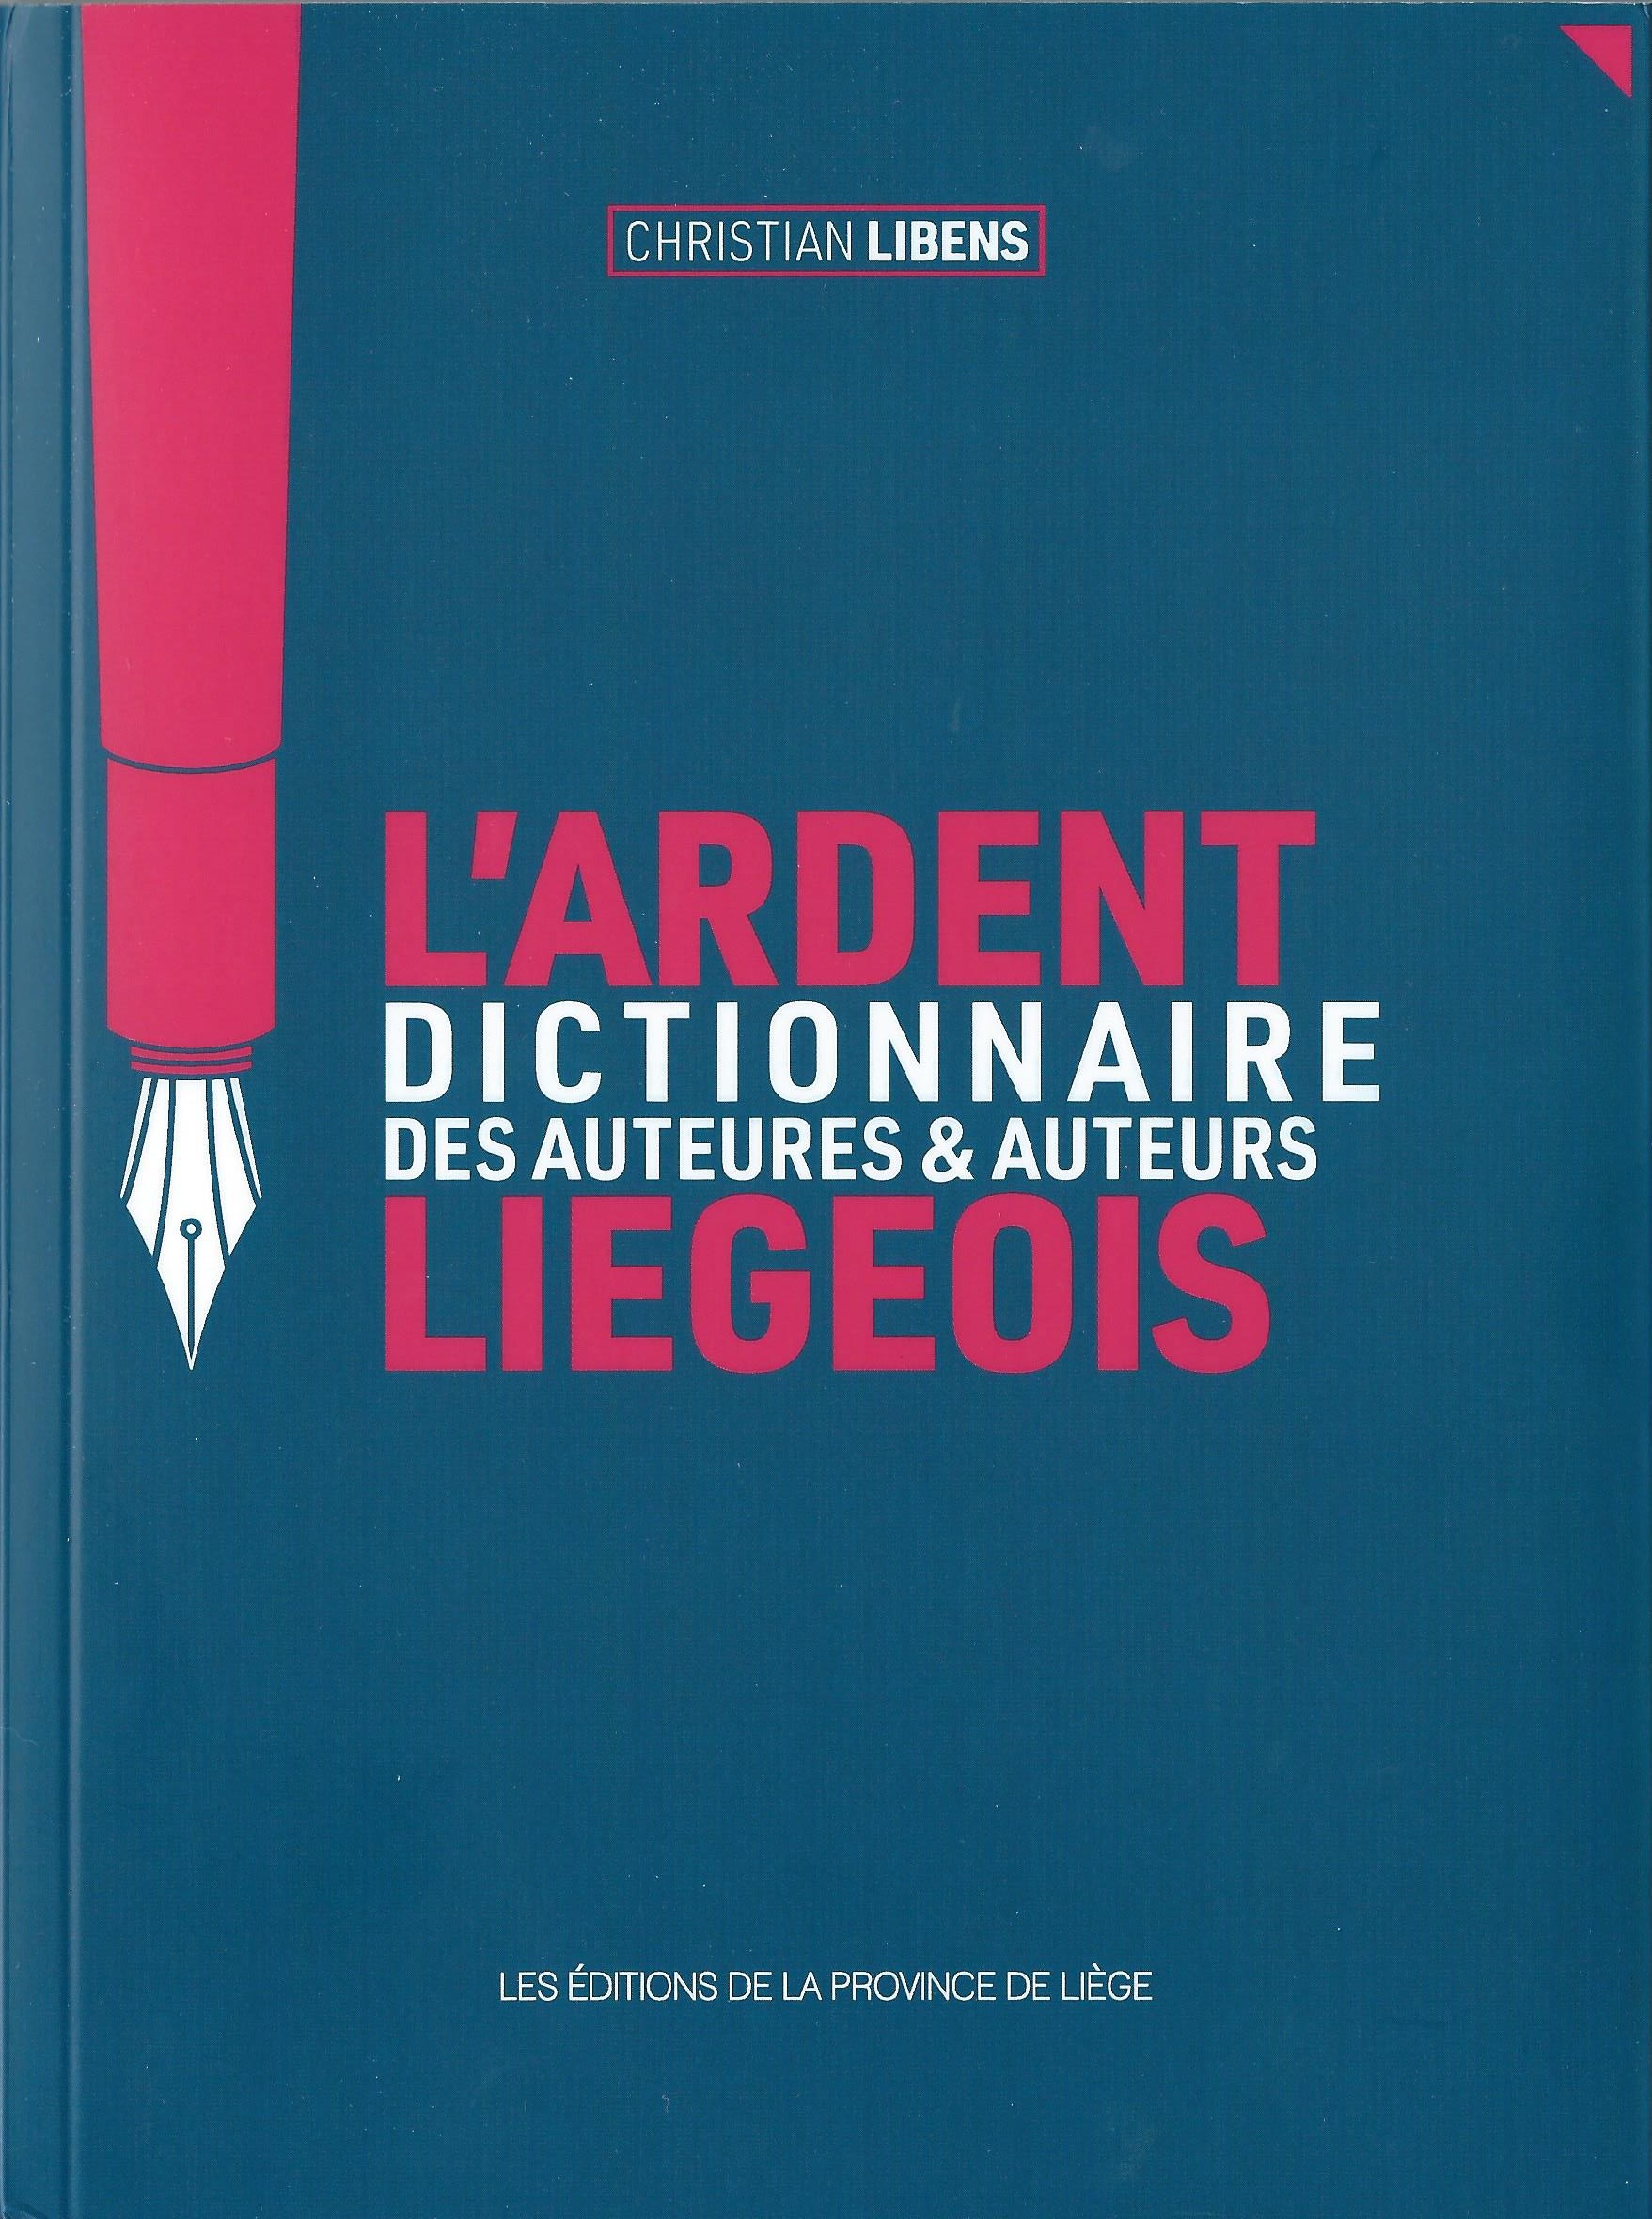 CHRISTIAN LIBENS - L'ardent dictionnaire des auteures et auteurs liégeois